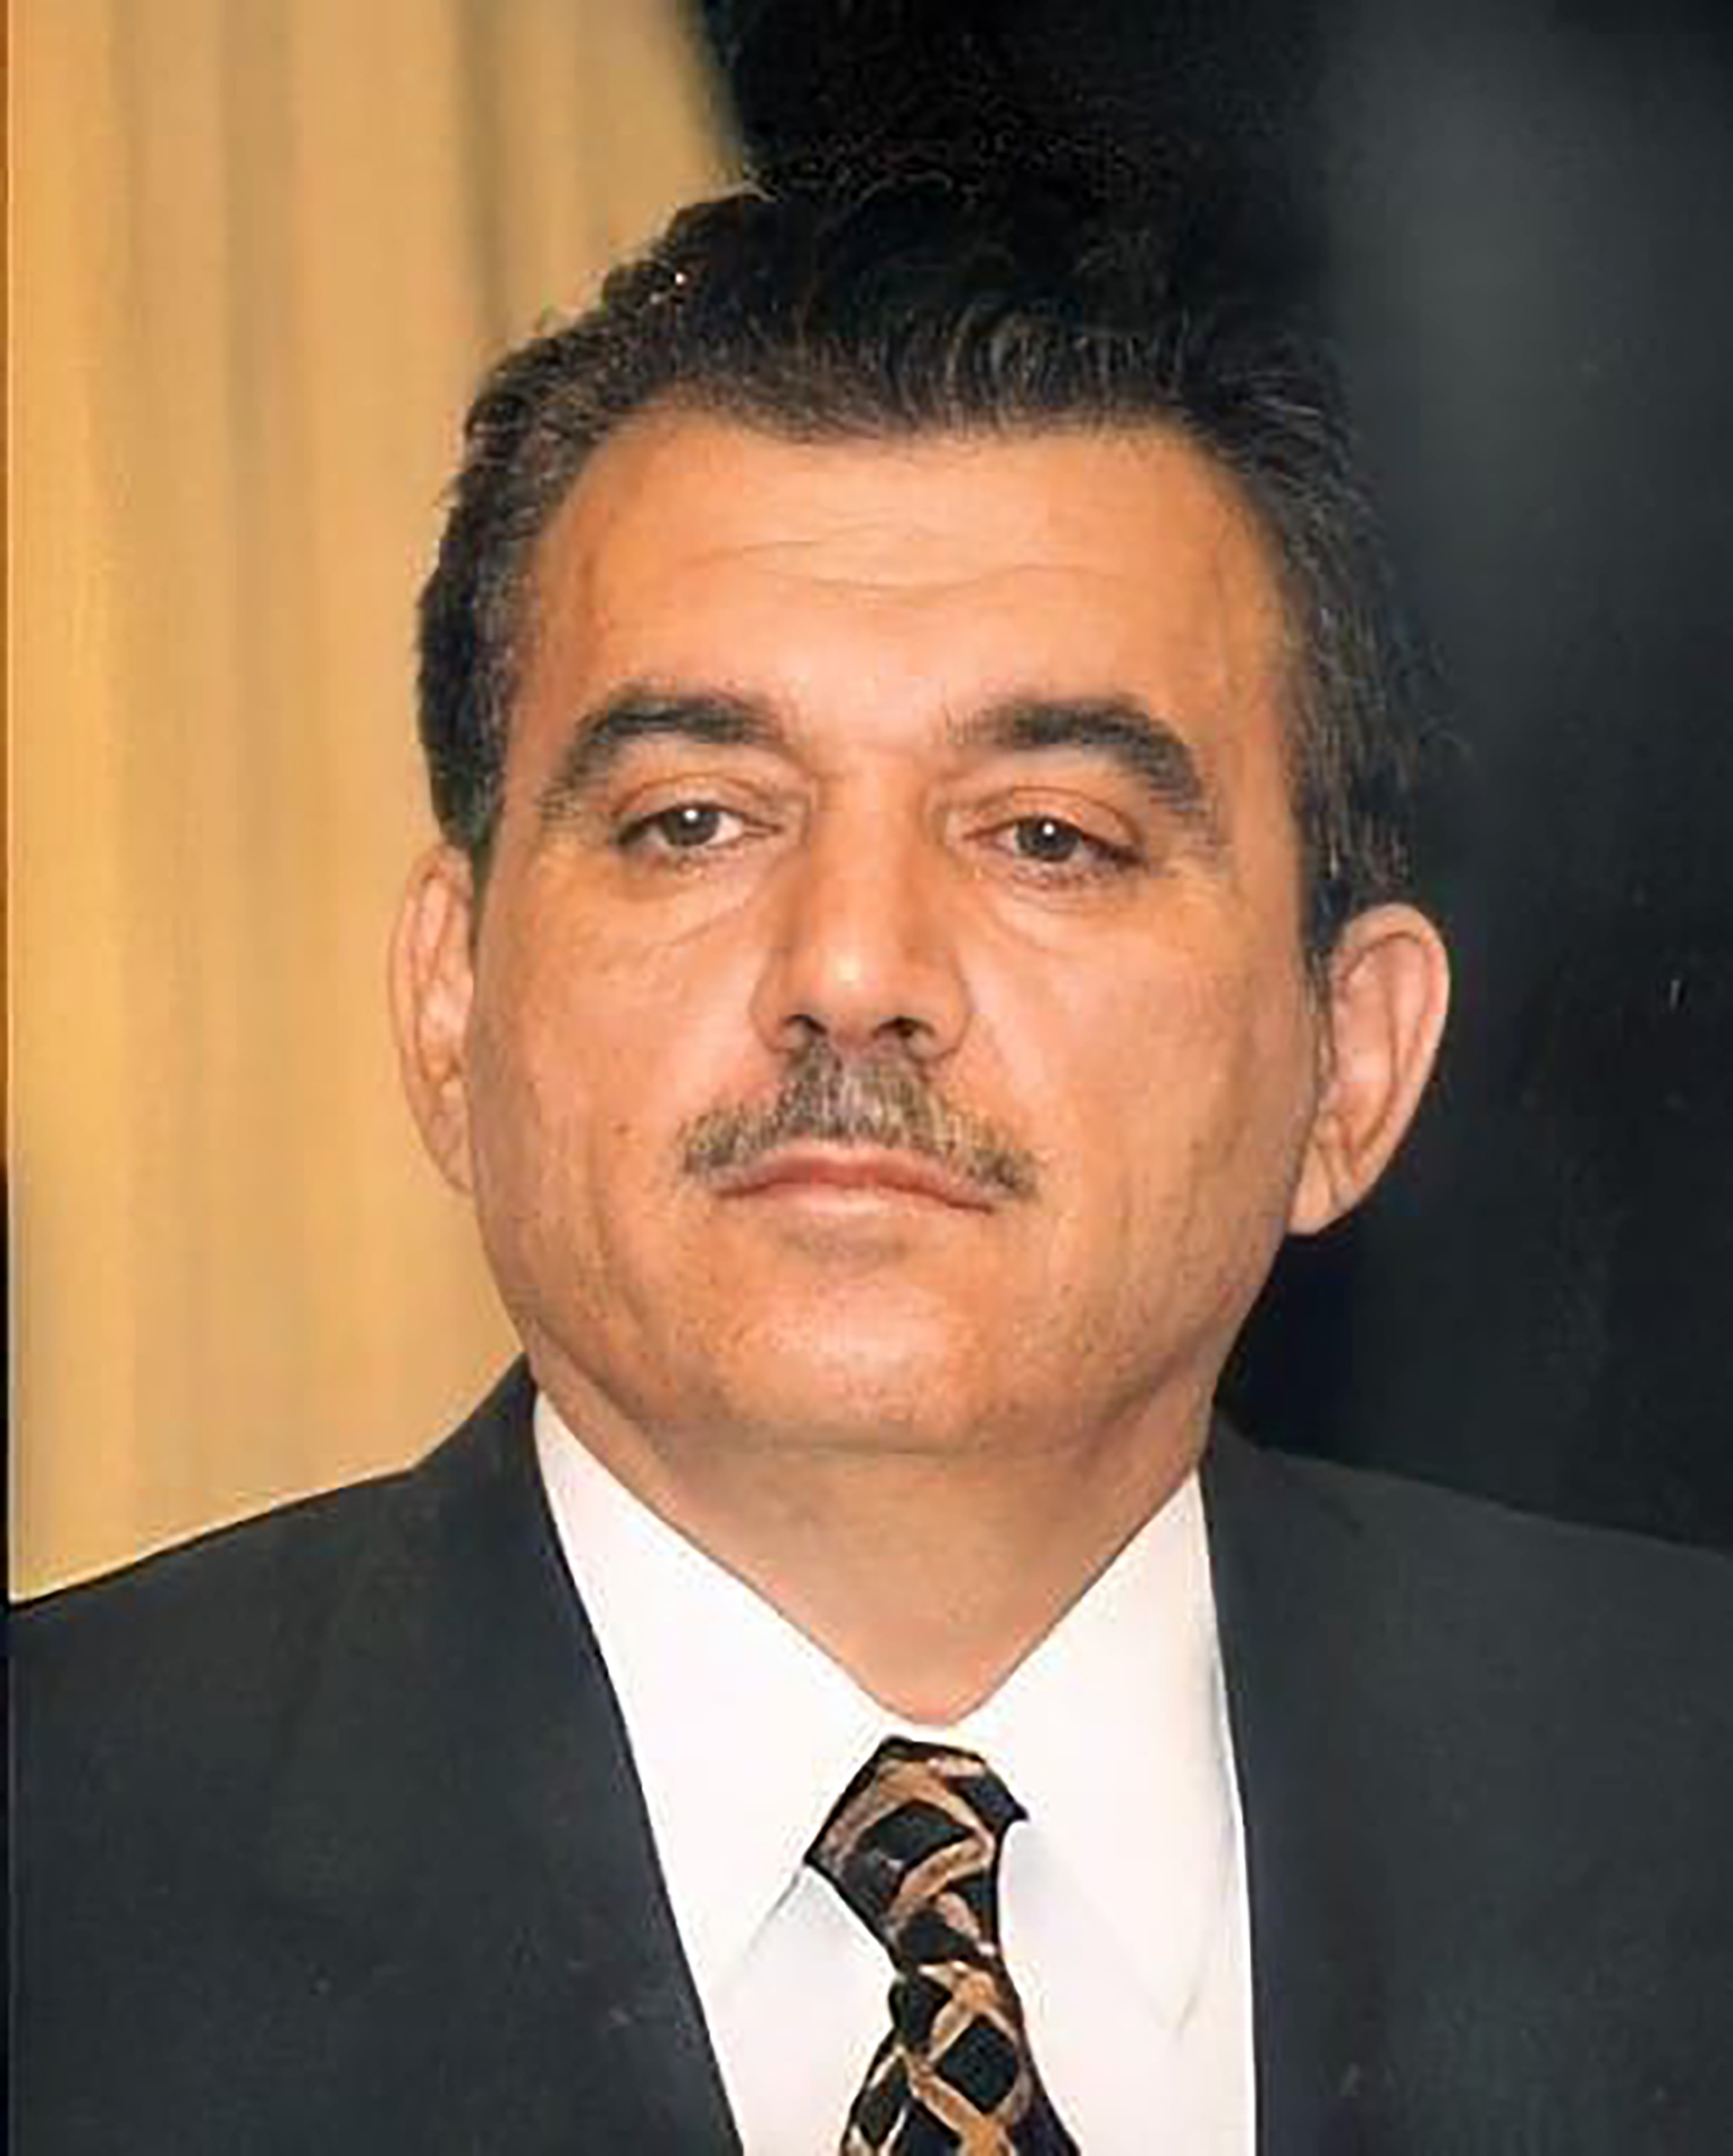 El jefe de servicios secretos jordano Sa’ad Kheir inspiró la película "Red de mentiras"